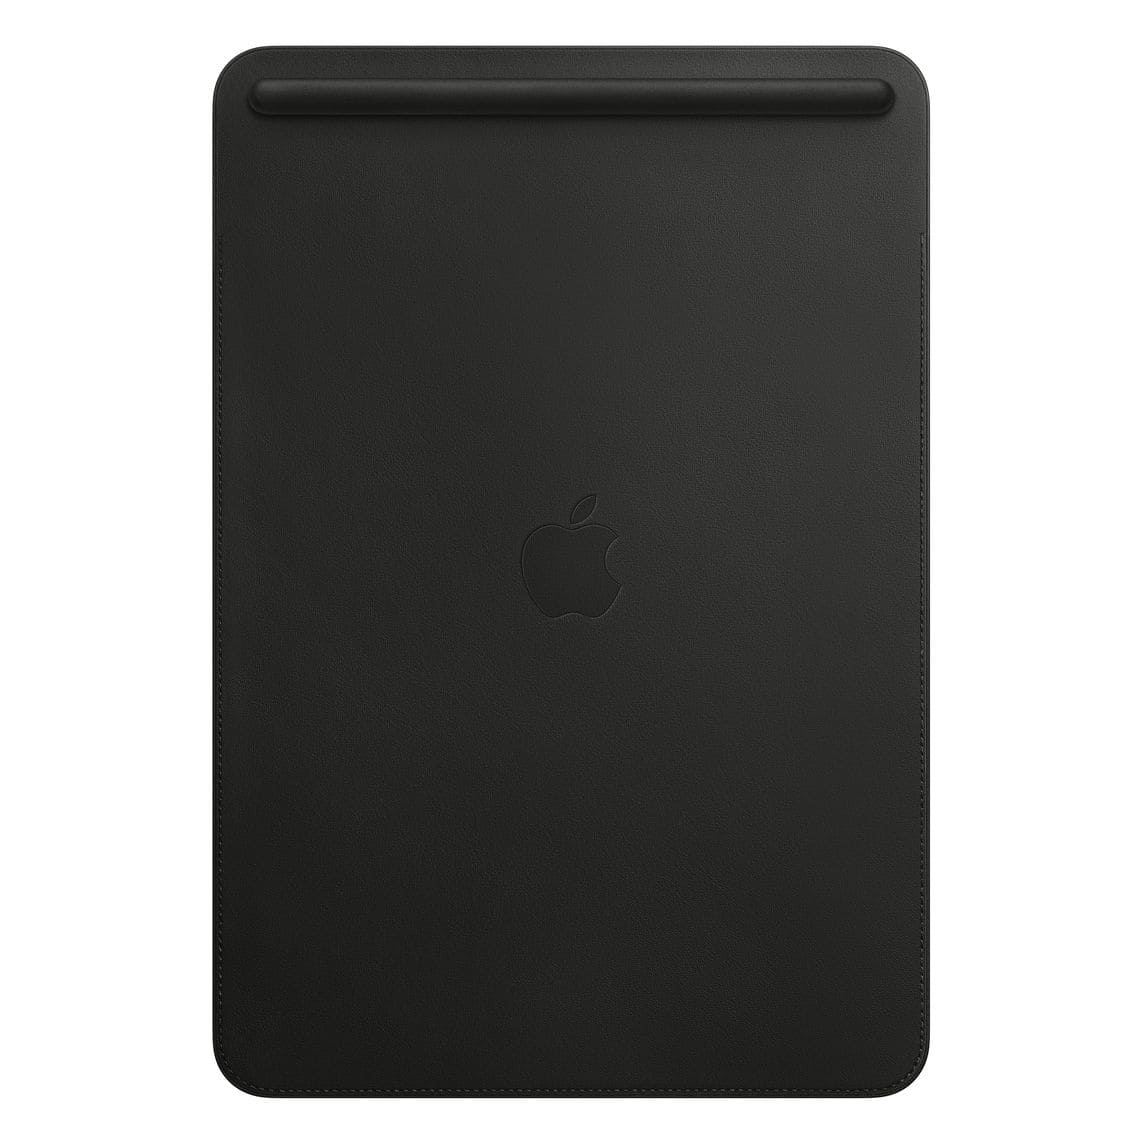 Фото — Чехол-футляр Apple Leather Sleeve для iPad Pro 10.5" черный